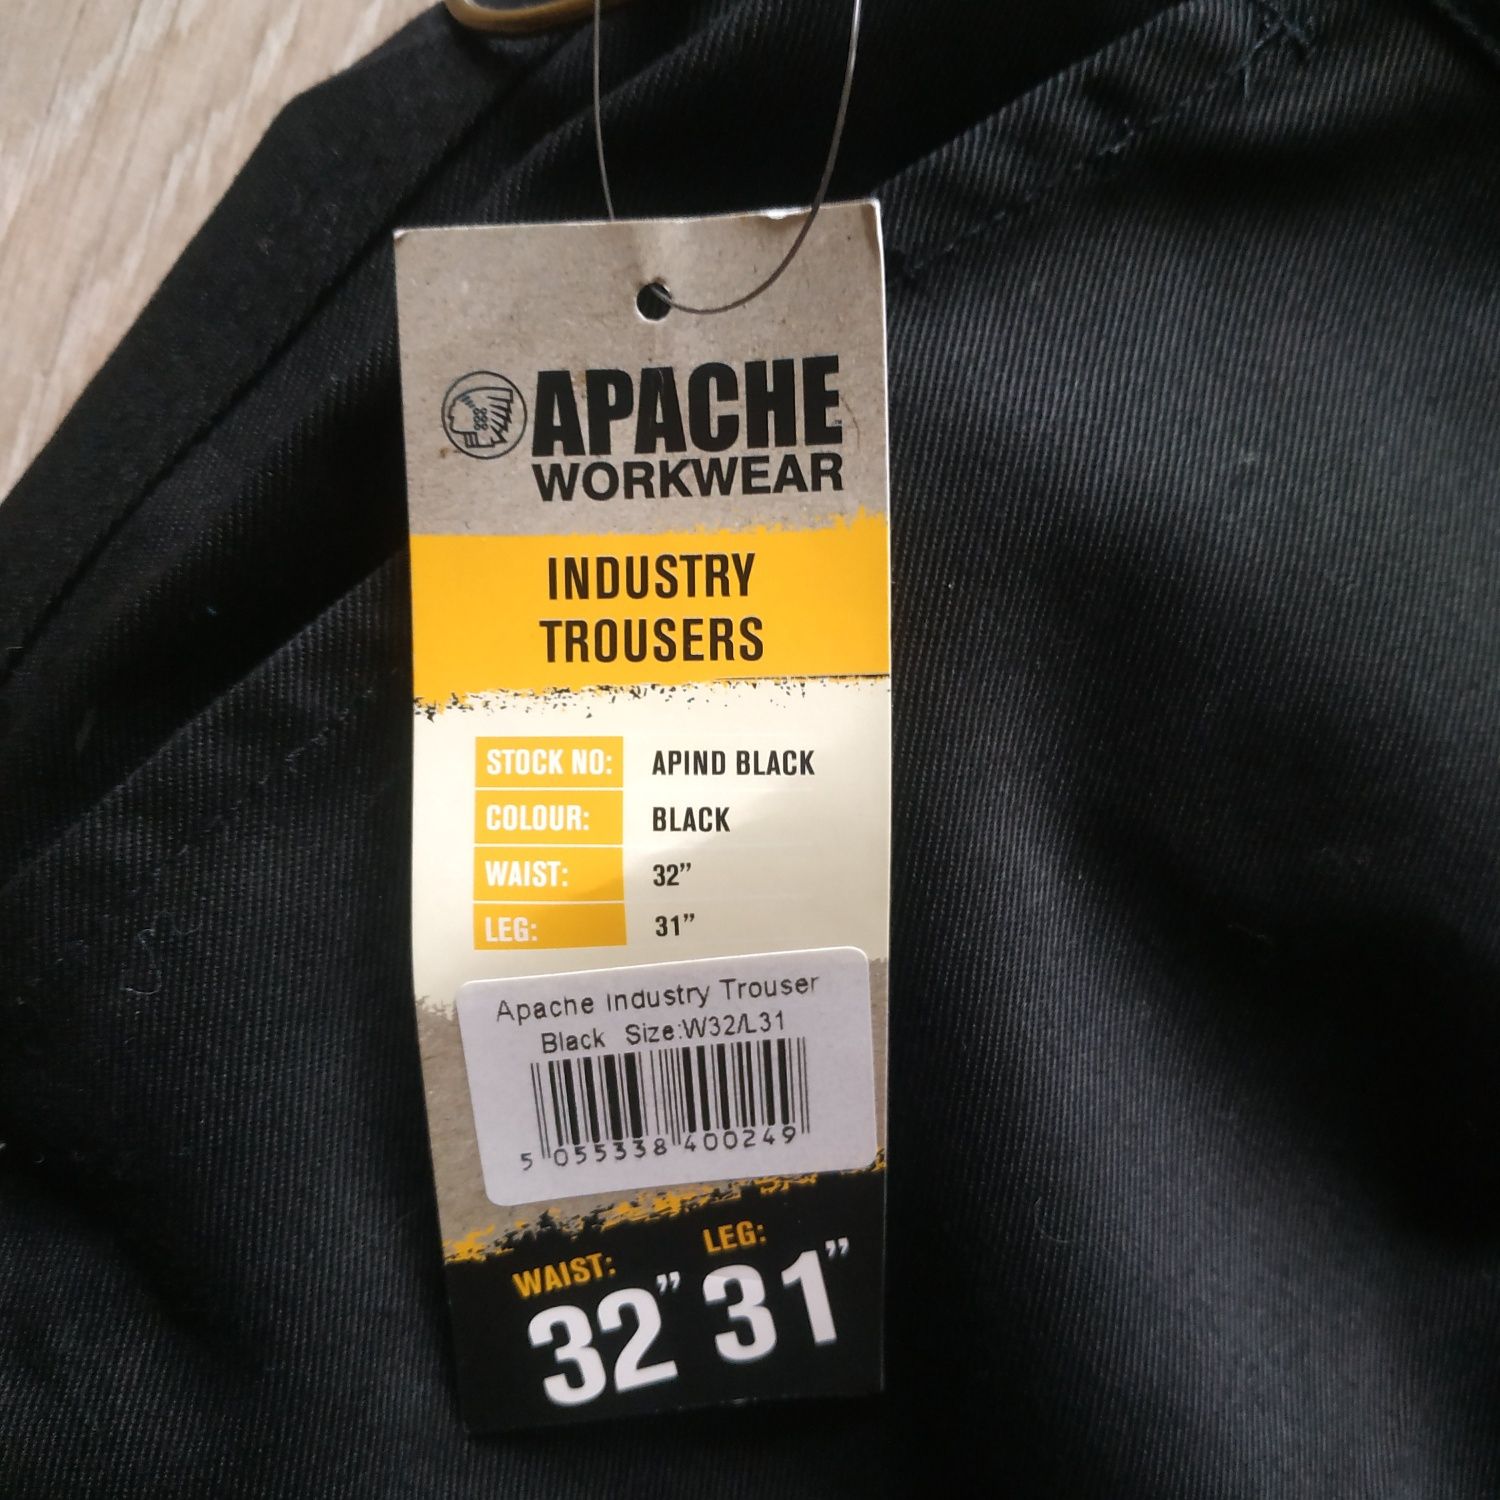 Apache work wear штаны рабочие размер 32/31, новые с биркой